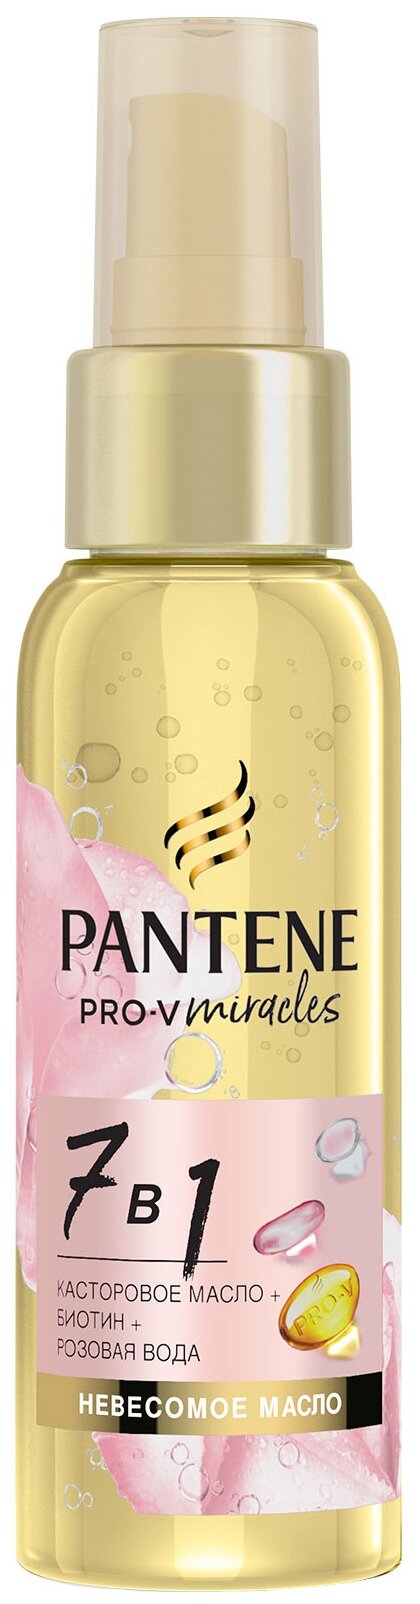 Pantene Pro-V Miracles масло для волос 7 в 1 для ослабленных волос и секущихся кончиков, 96.31 г, 100 мл, спрей